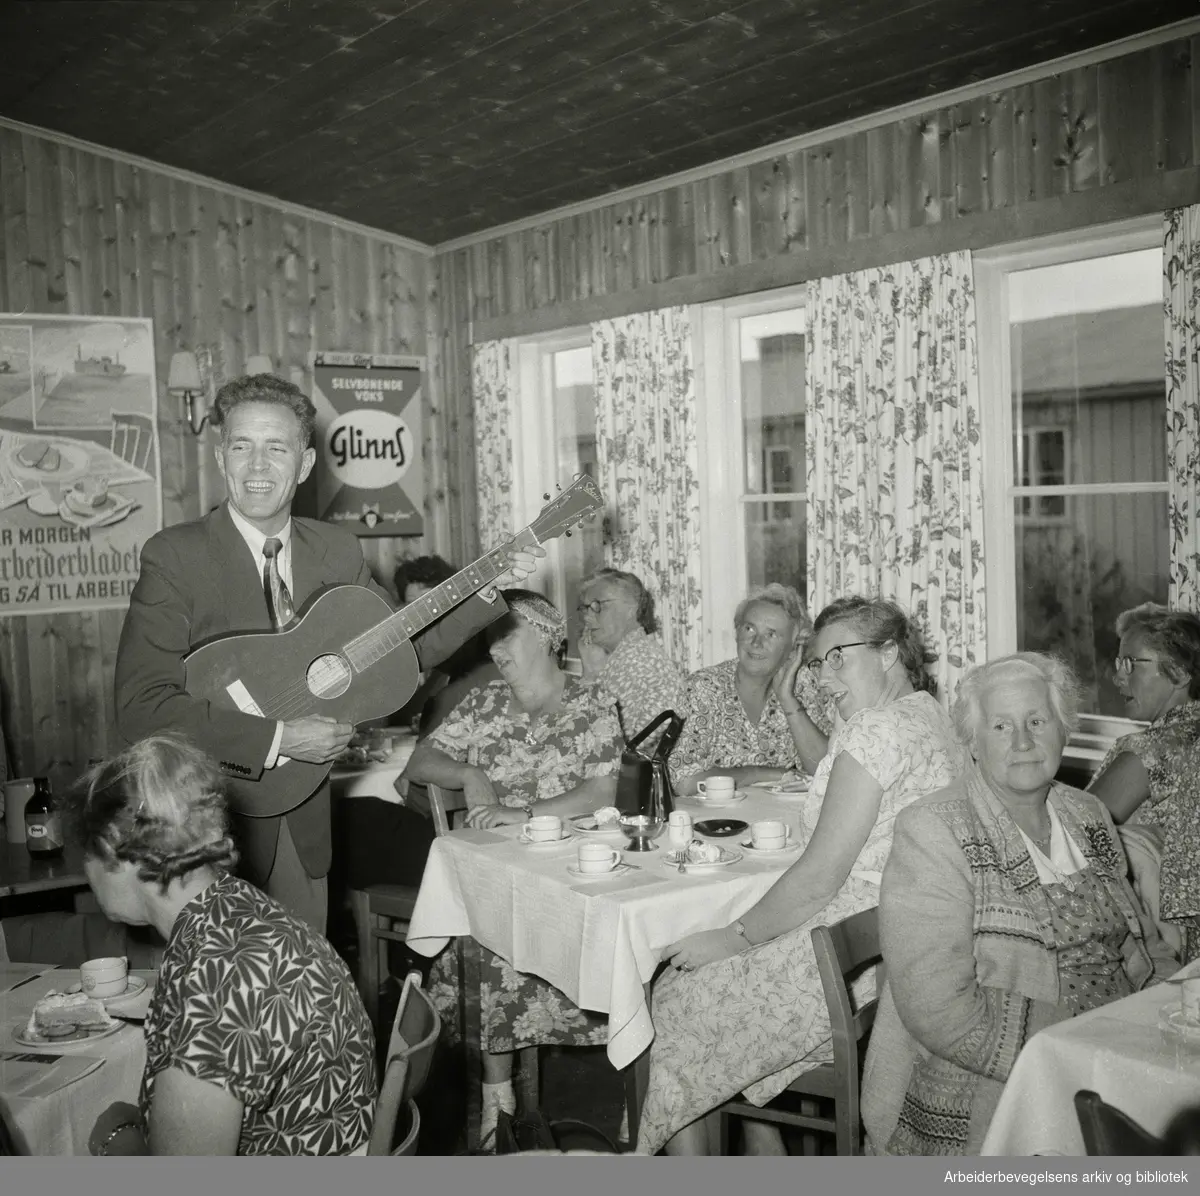 Arbeiderbladets husmortimer på Helsfyr hotel i Oslo. Tryggve Aakervik (1917-2006) "Mannen med den røde gitar" synger og spiller. September 1955.